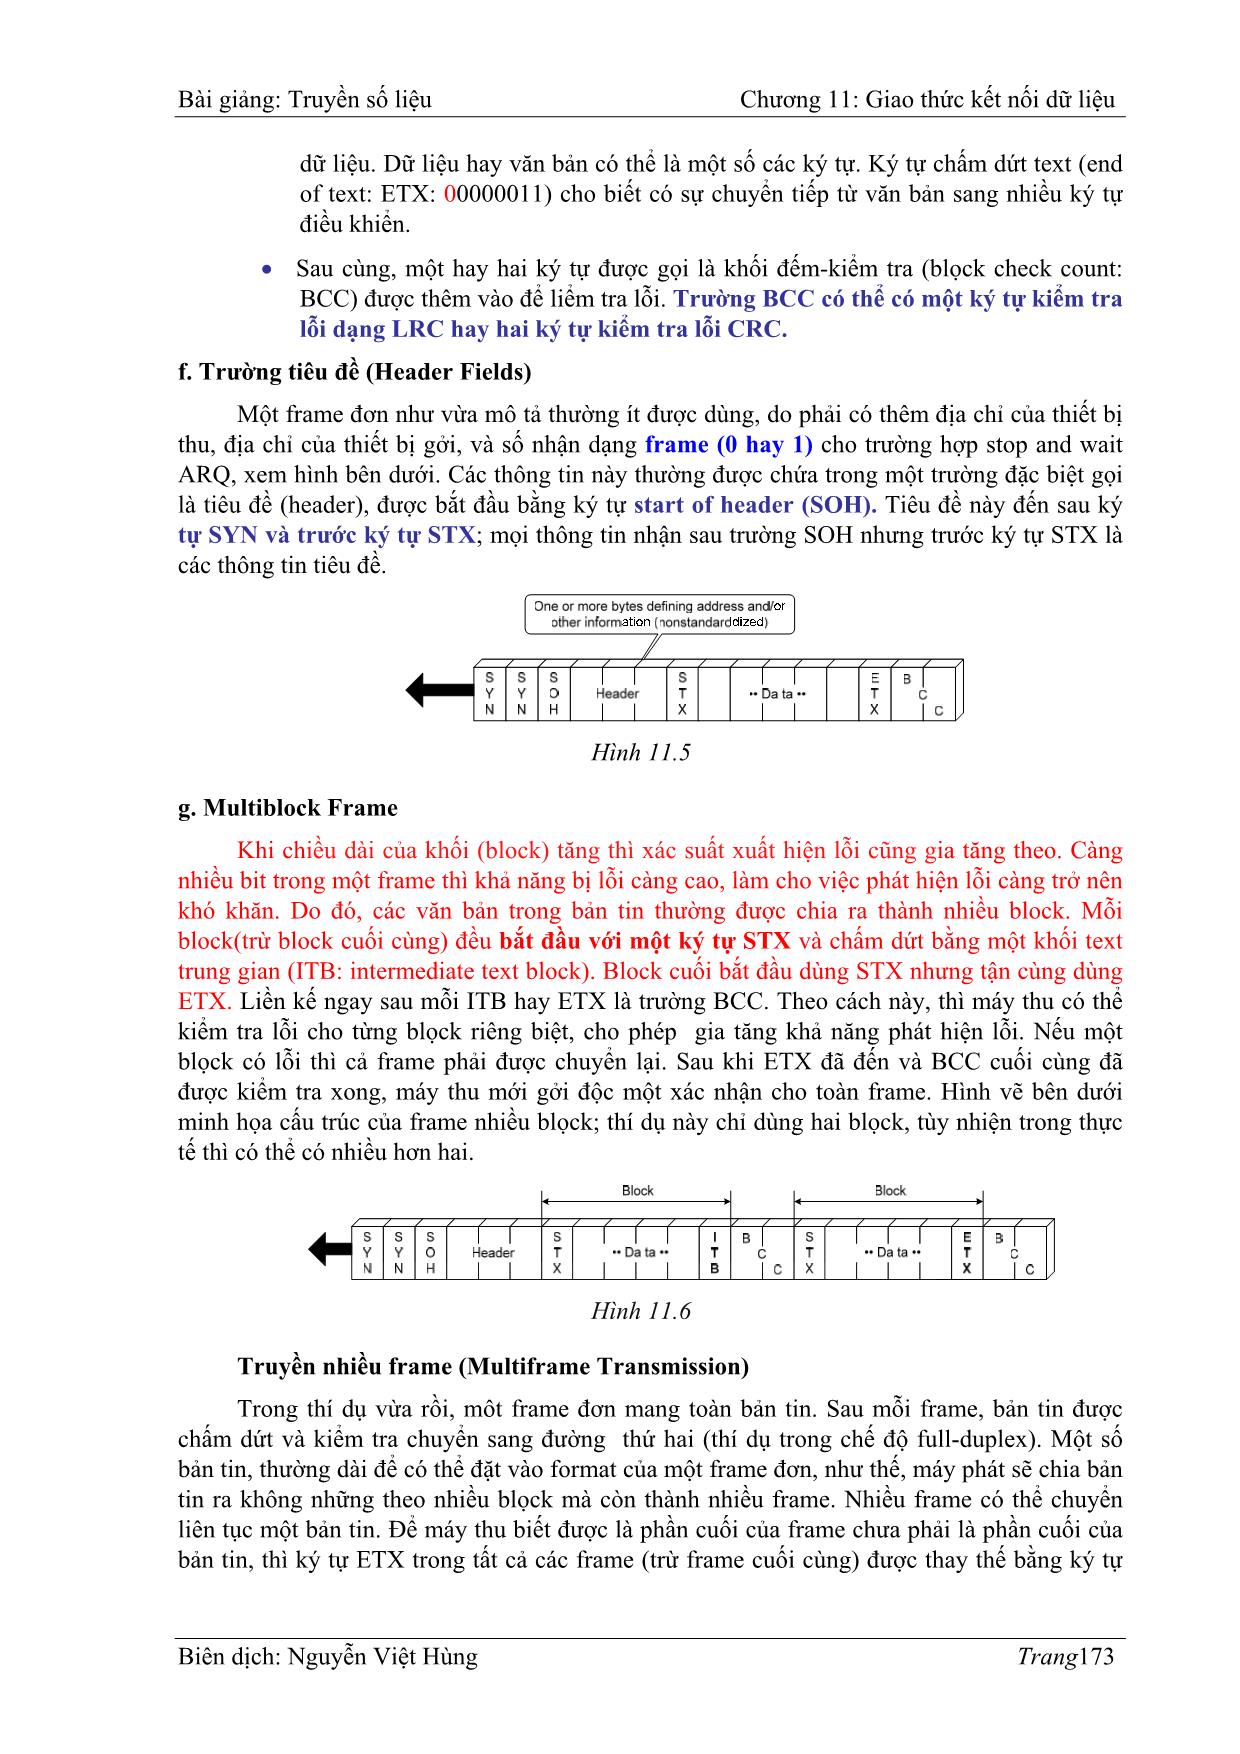 Bài giảng Truyền số liệu - Chương 11: Giao thức kết nối dữ liệu (Data link protocols) - Nguyễn Việt Hùng trang 5